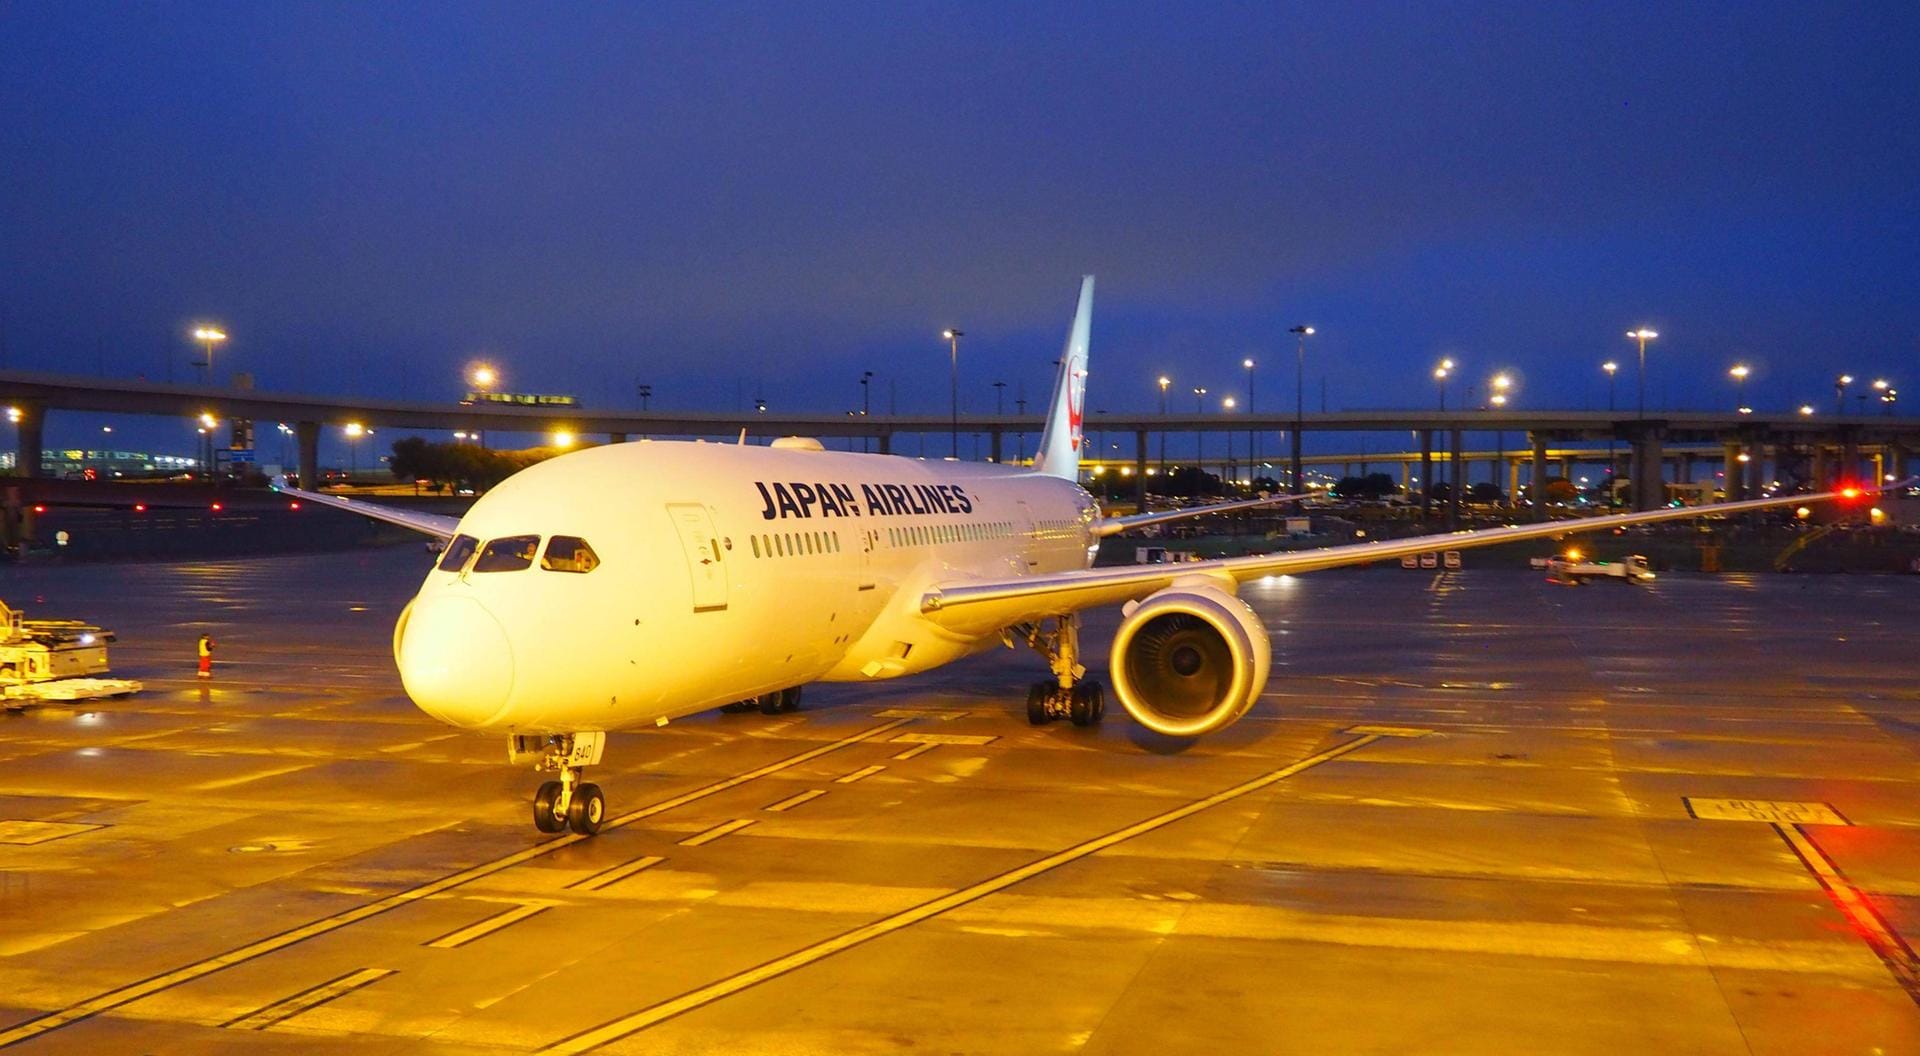 Japan Airlines machte den größten Satz in der Rangliste: Von Platz 44 auf 9. Der Grund: Ein Unfall aus dem Jahre 1985 mit 520 Todesopfern floss dieses Jahr erstmals nicht mehr in die Statistik ein.